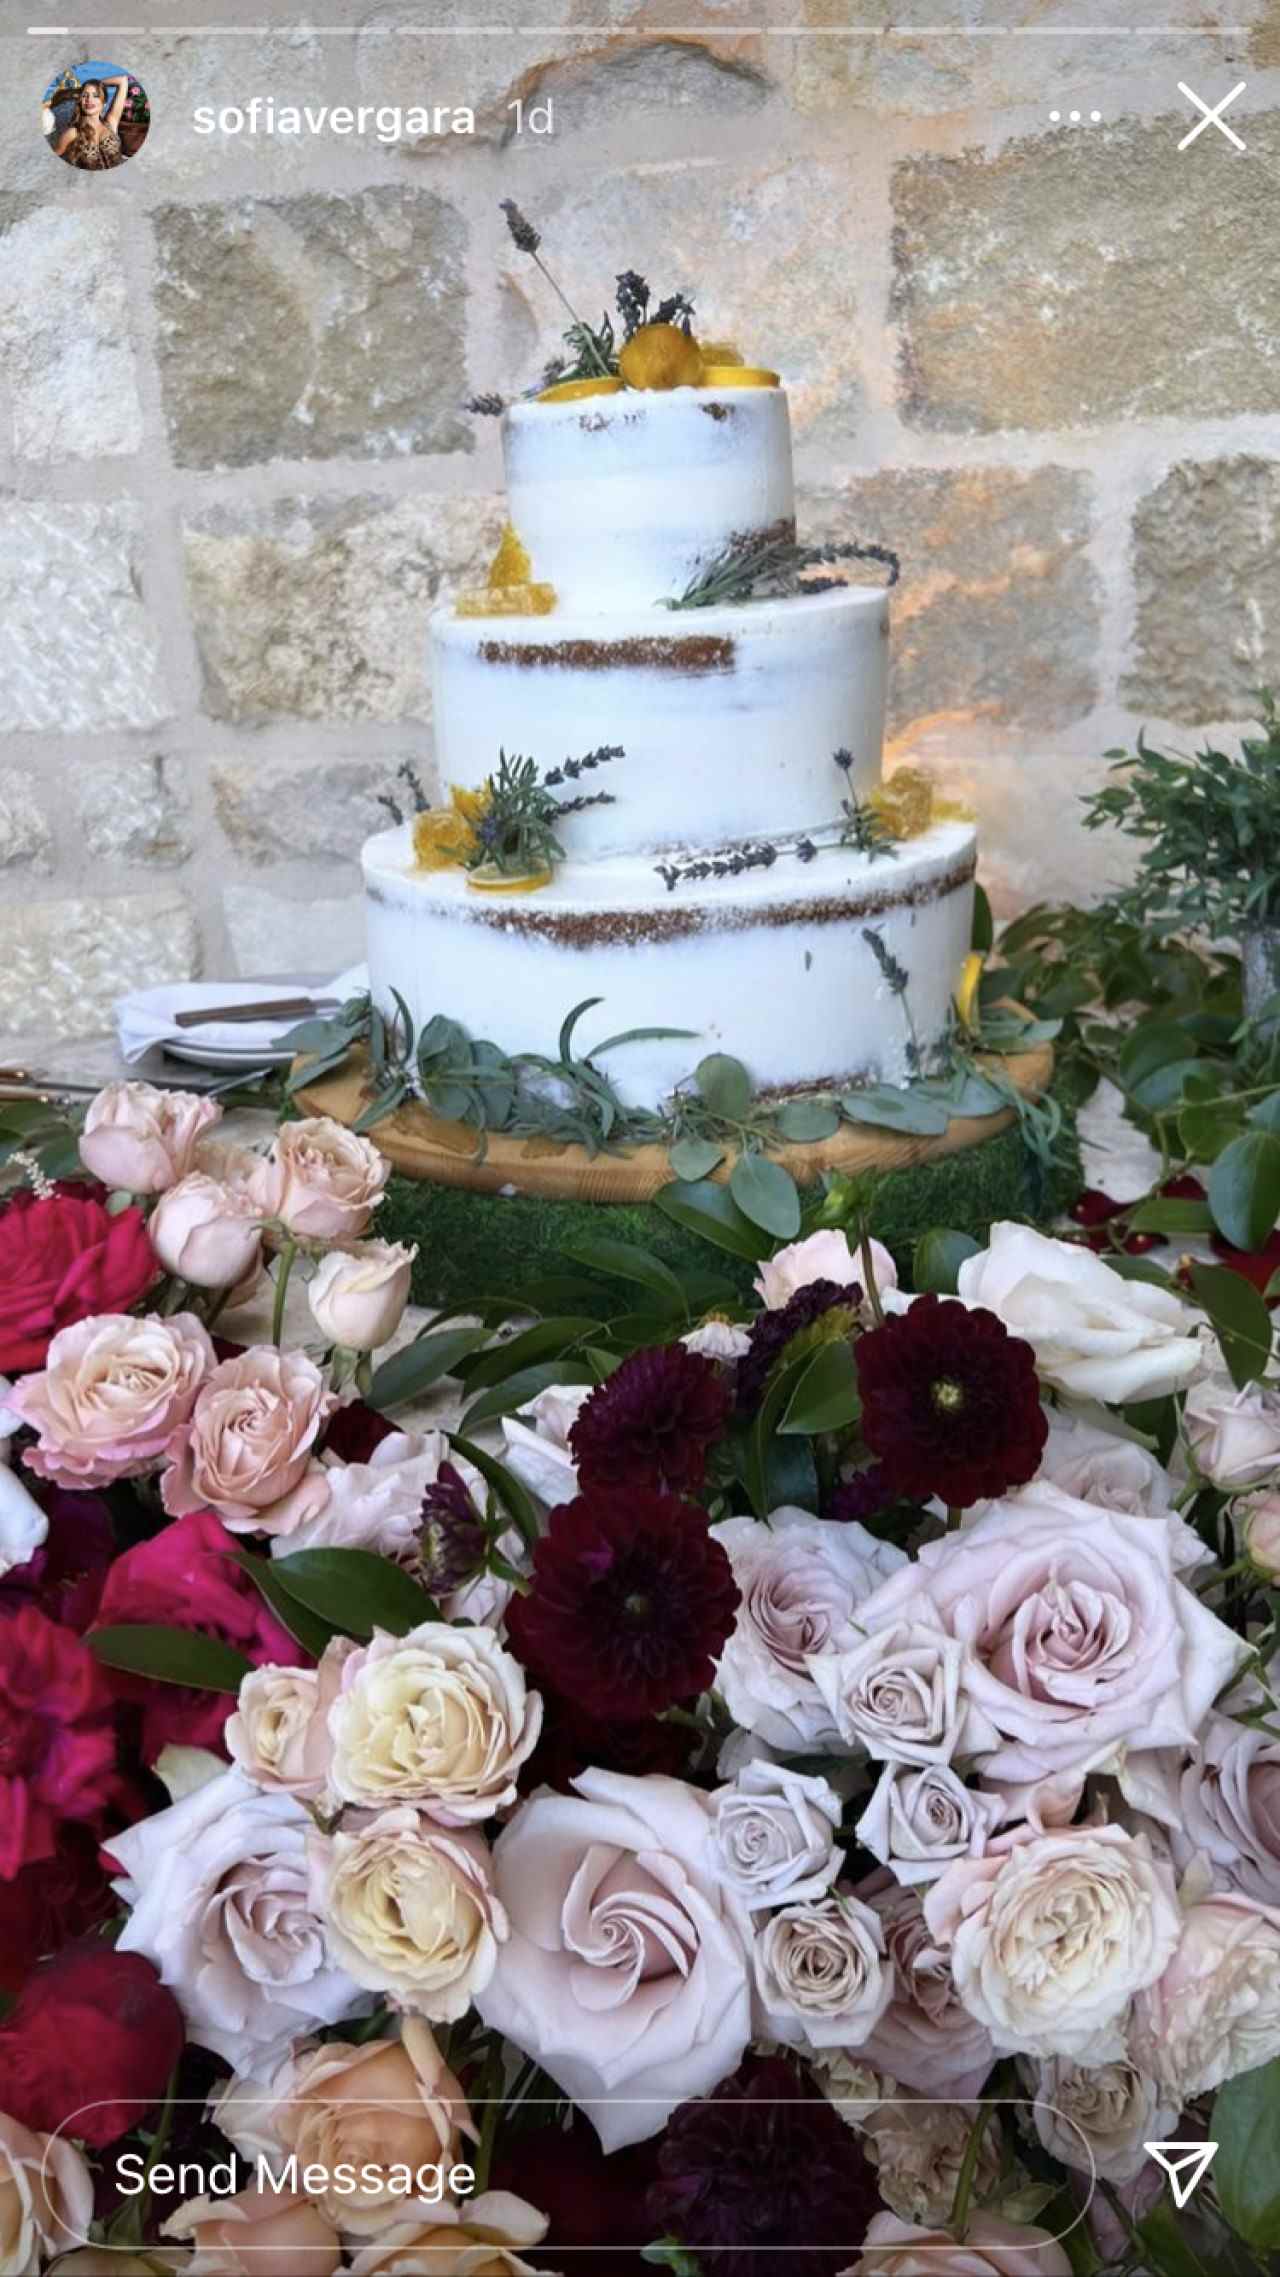 Sofia Vergara a partagé une photo du gâteau de mariage de Sarah Hyland et Wells Adams.